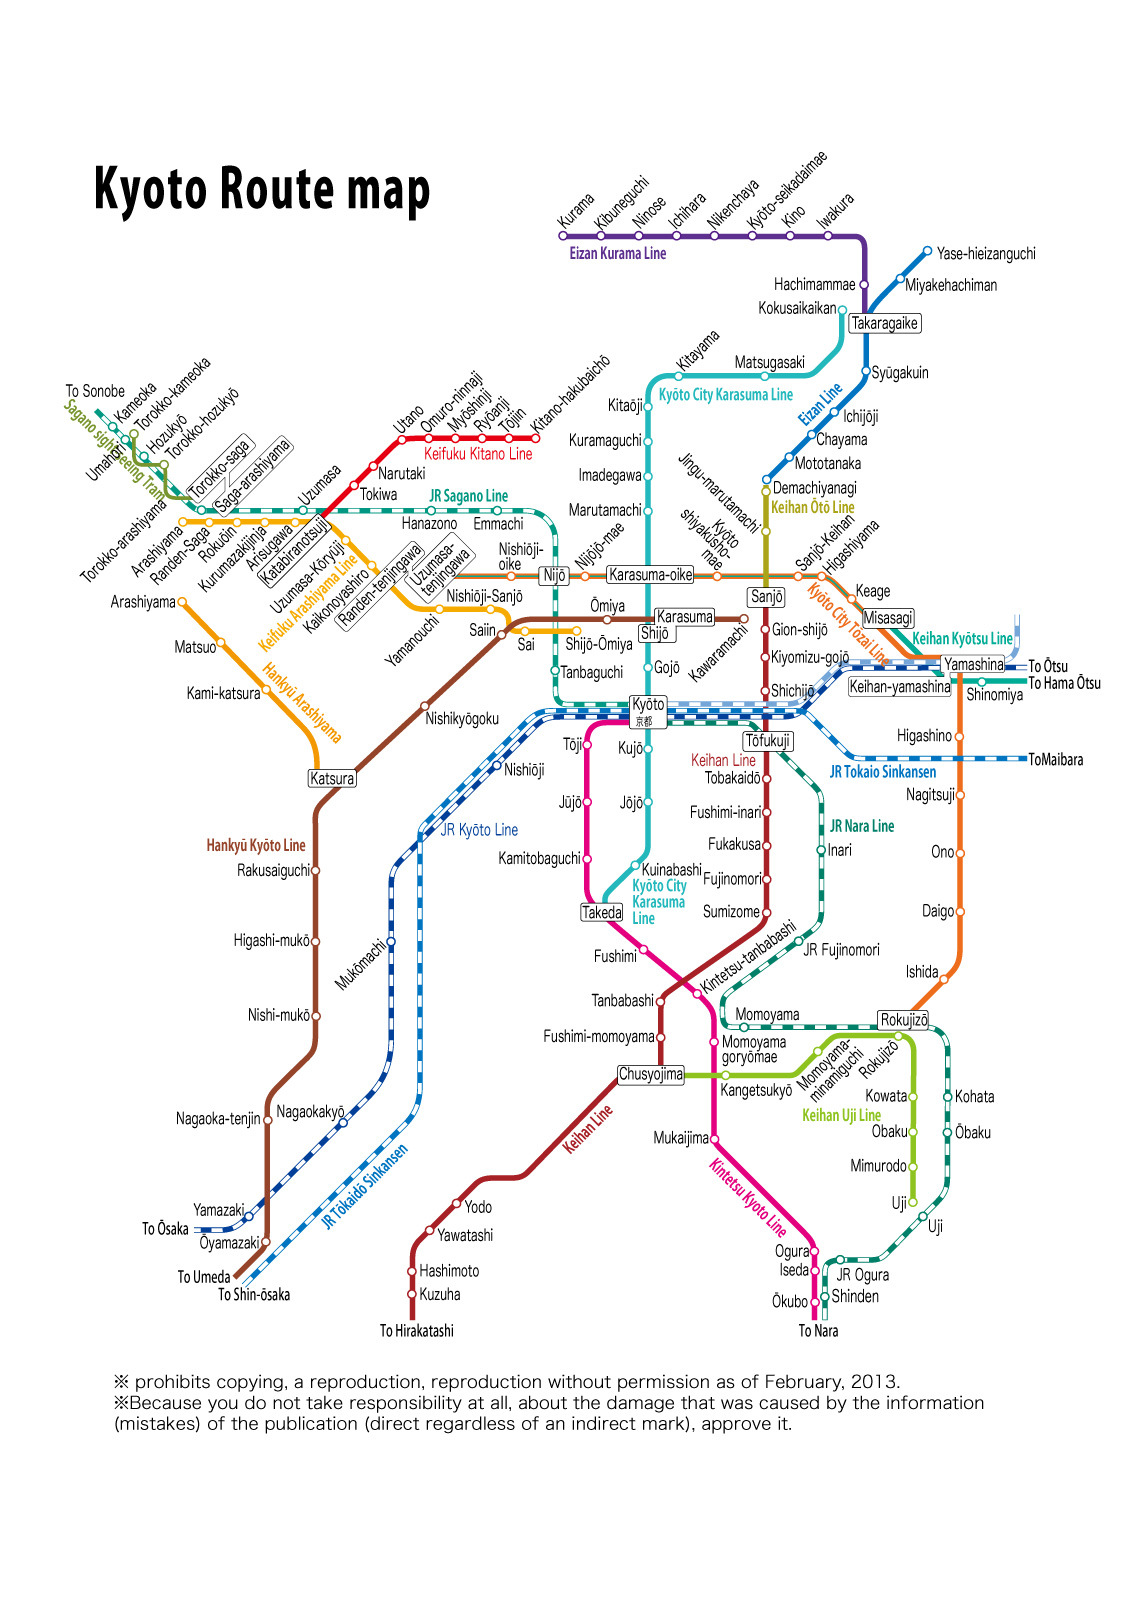 図 メトロ 路線 地下鉄 大阪 地下鉄ドアの「魚」、実は路線図だった！ 大阪、目玉の位置は交通局